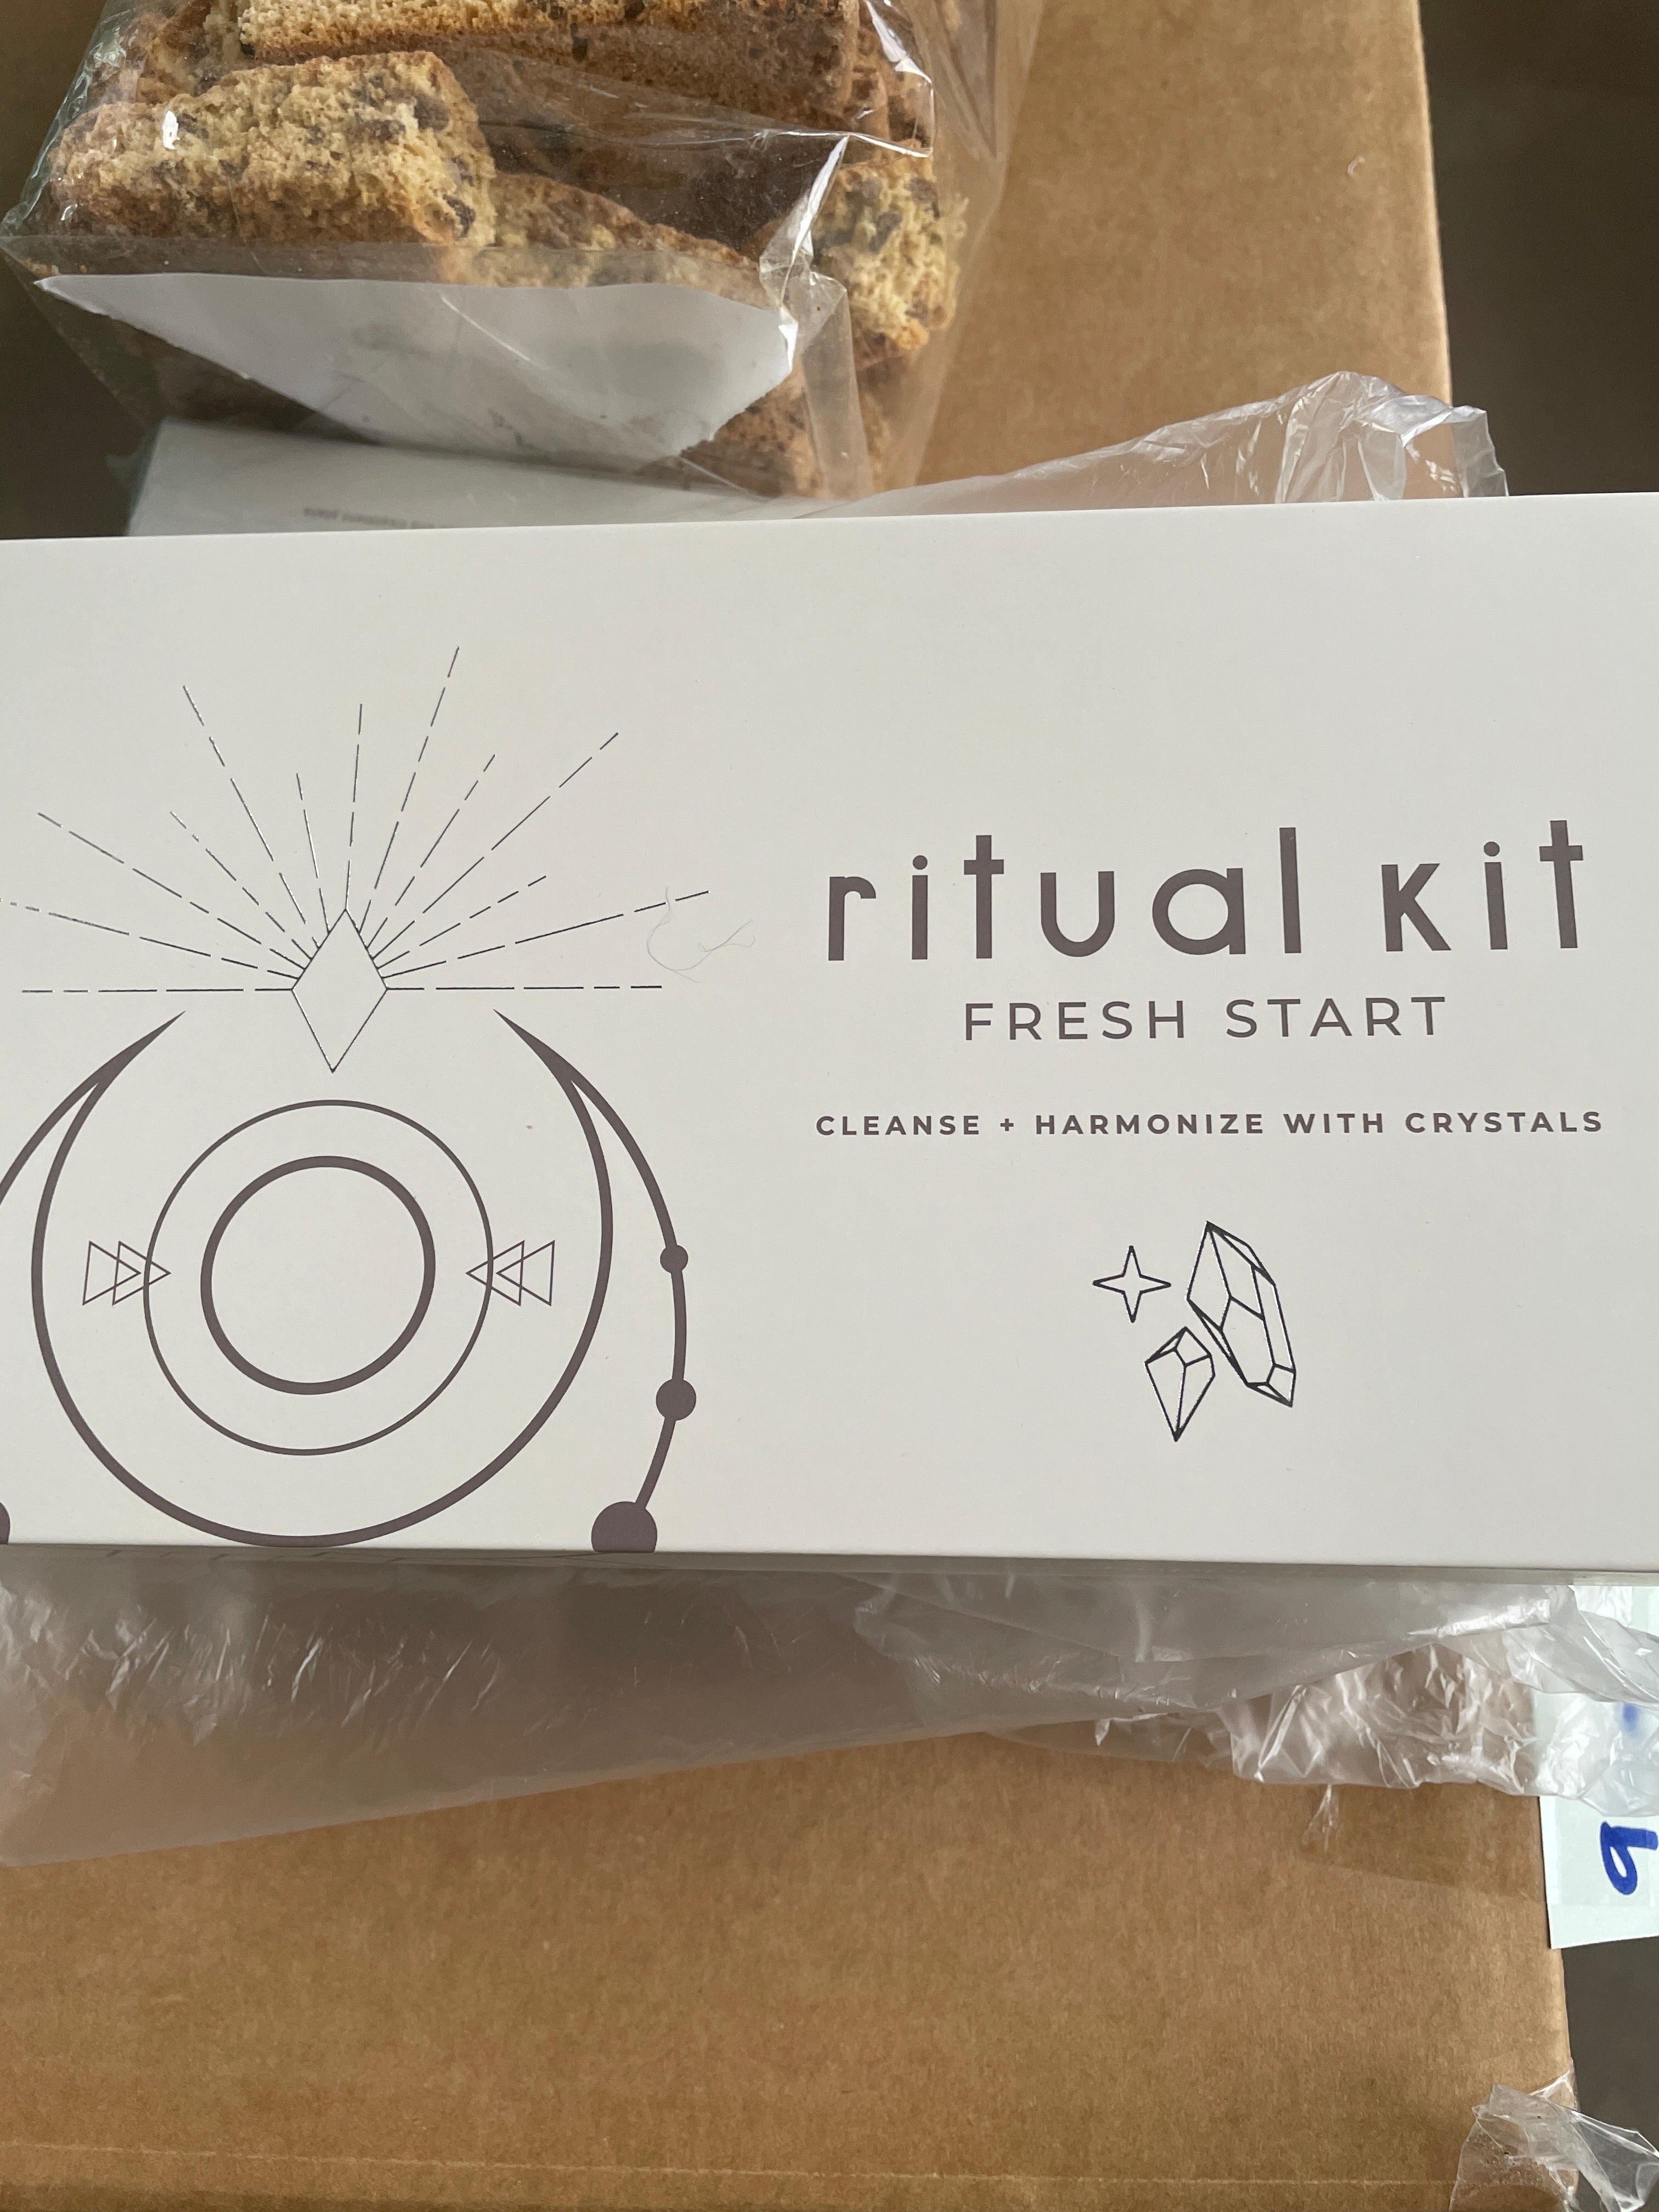 Ritual kit fresh start